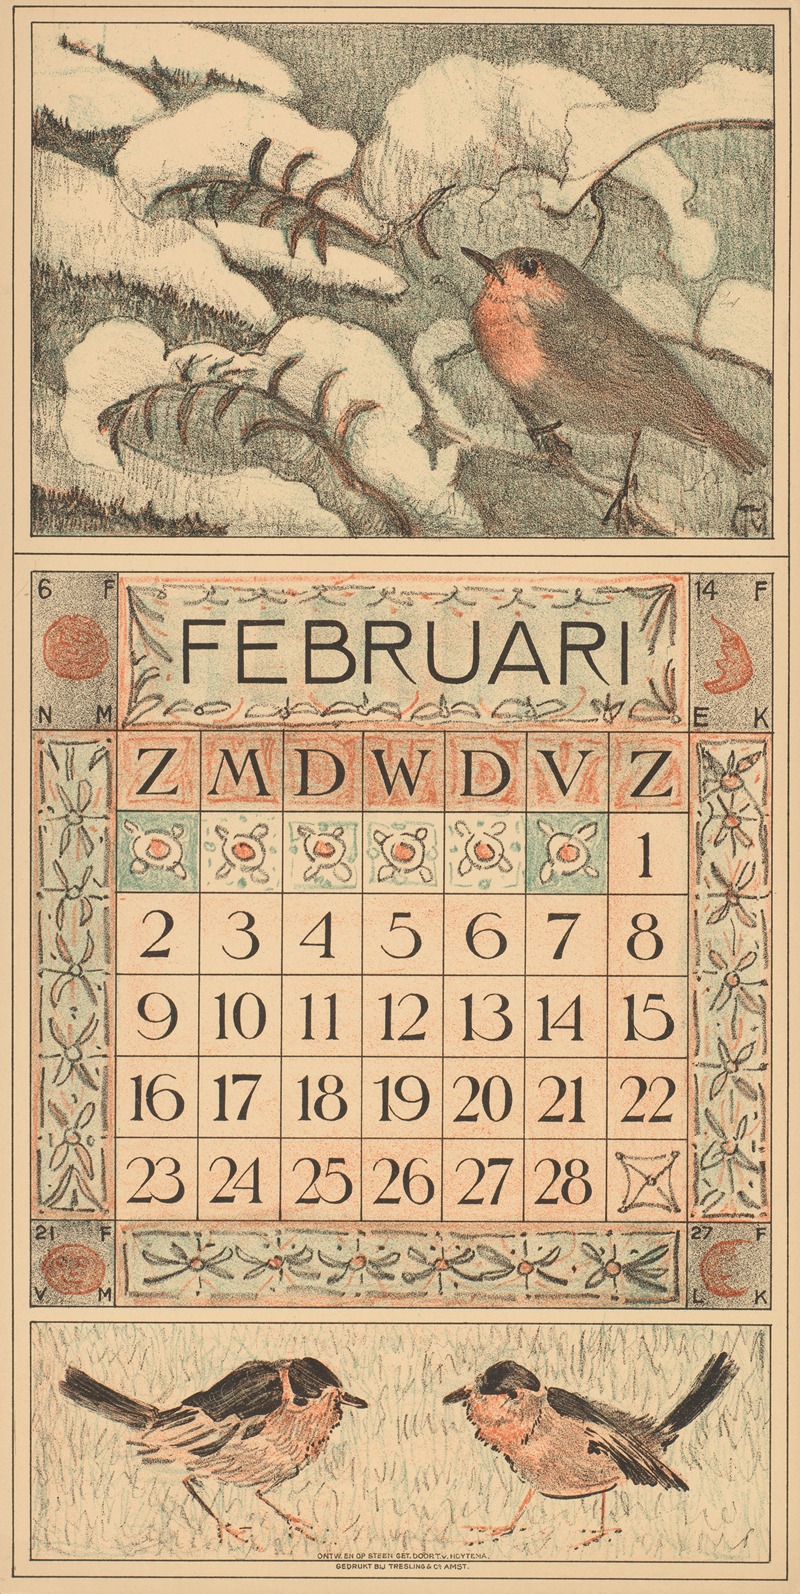 Theo van Hoytema - Kalenderblad voor februari 1913 met een roodborstje op een besneeuwde boomtak